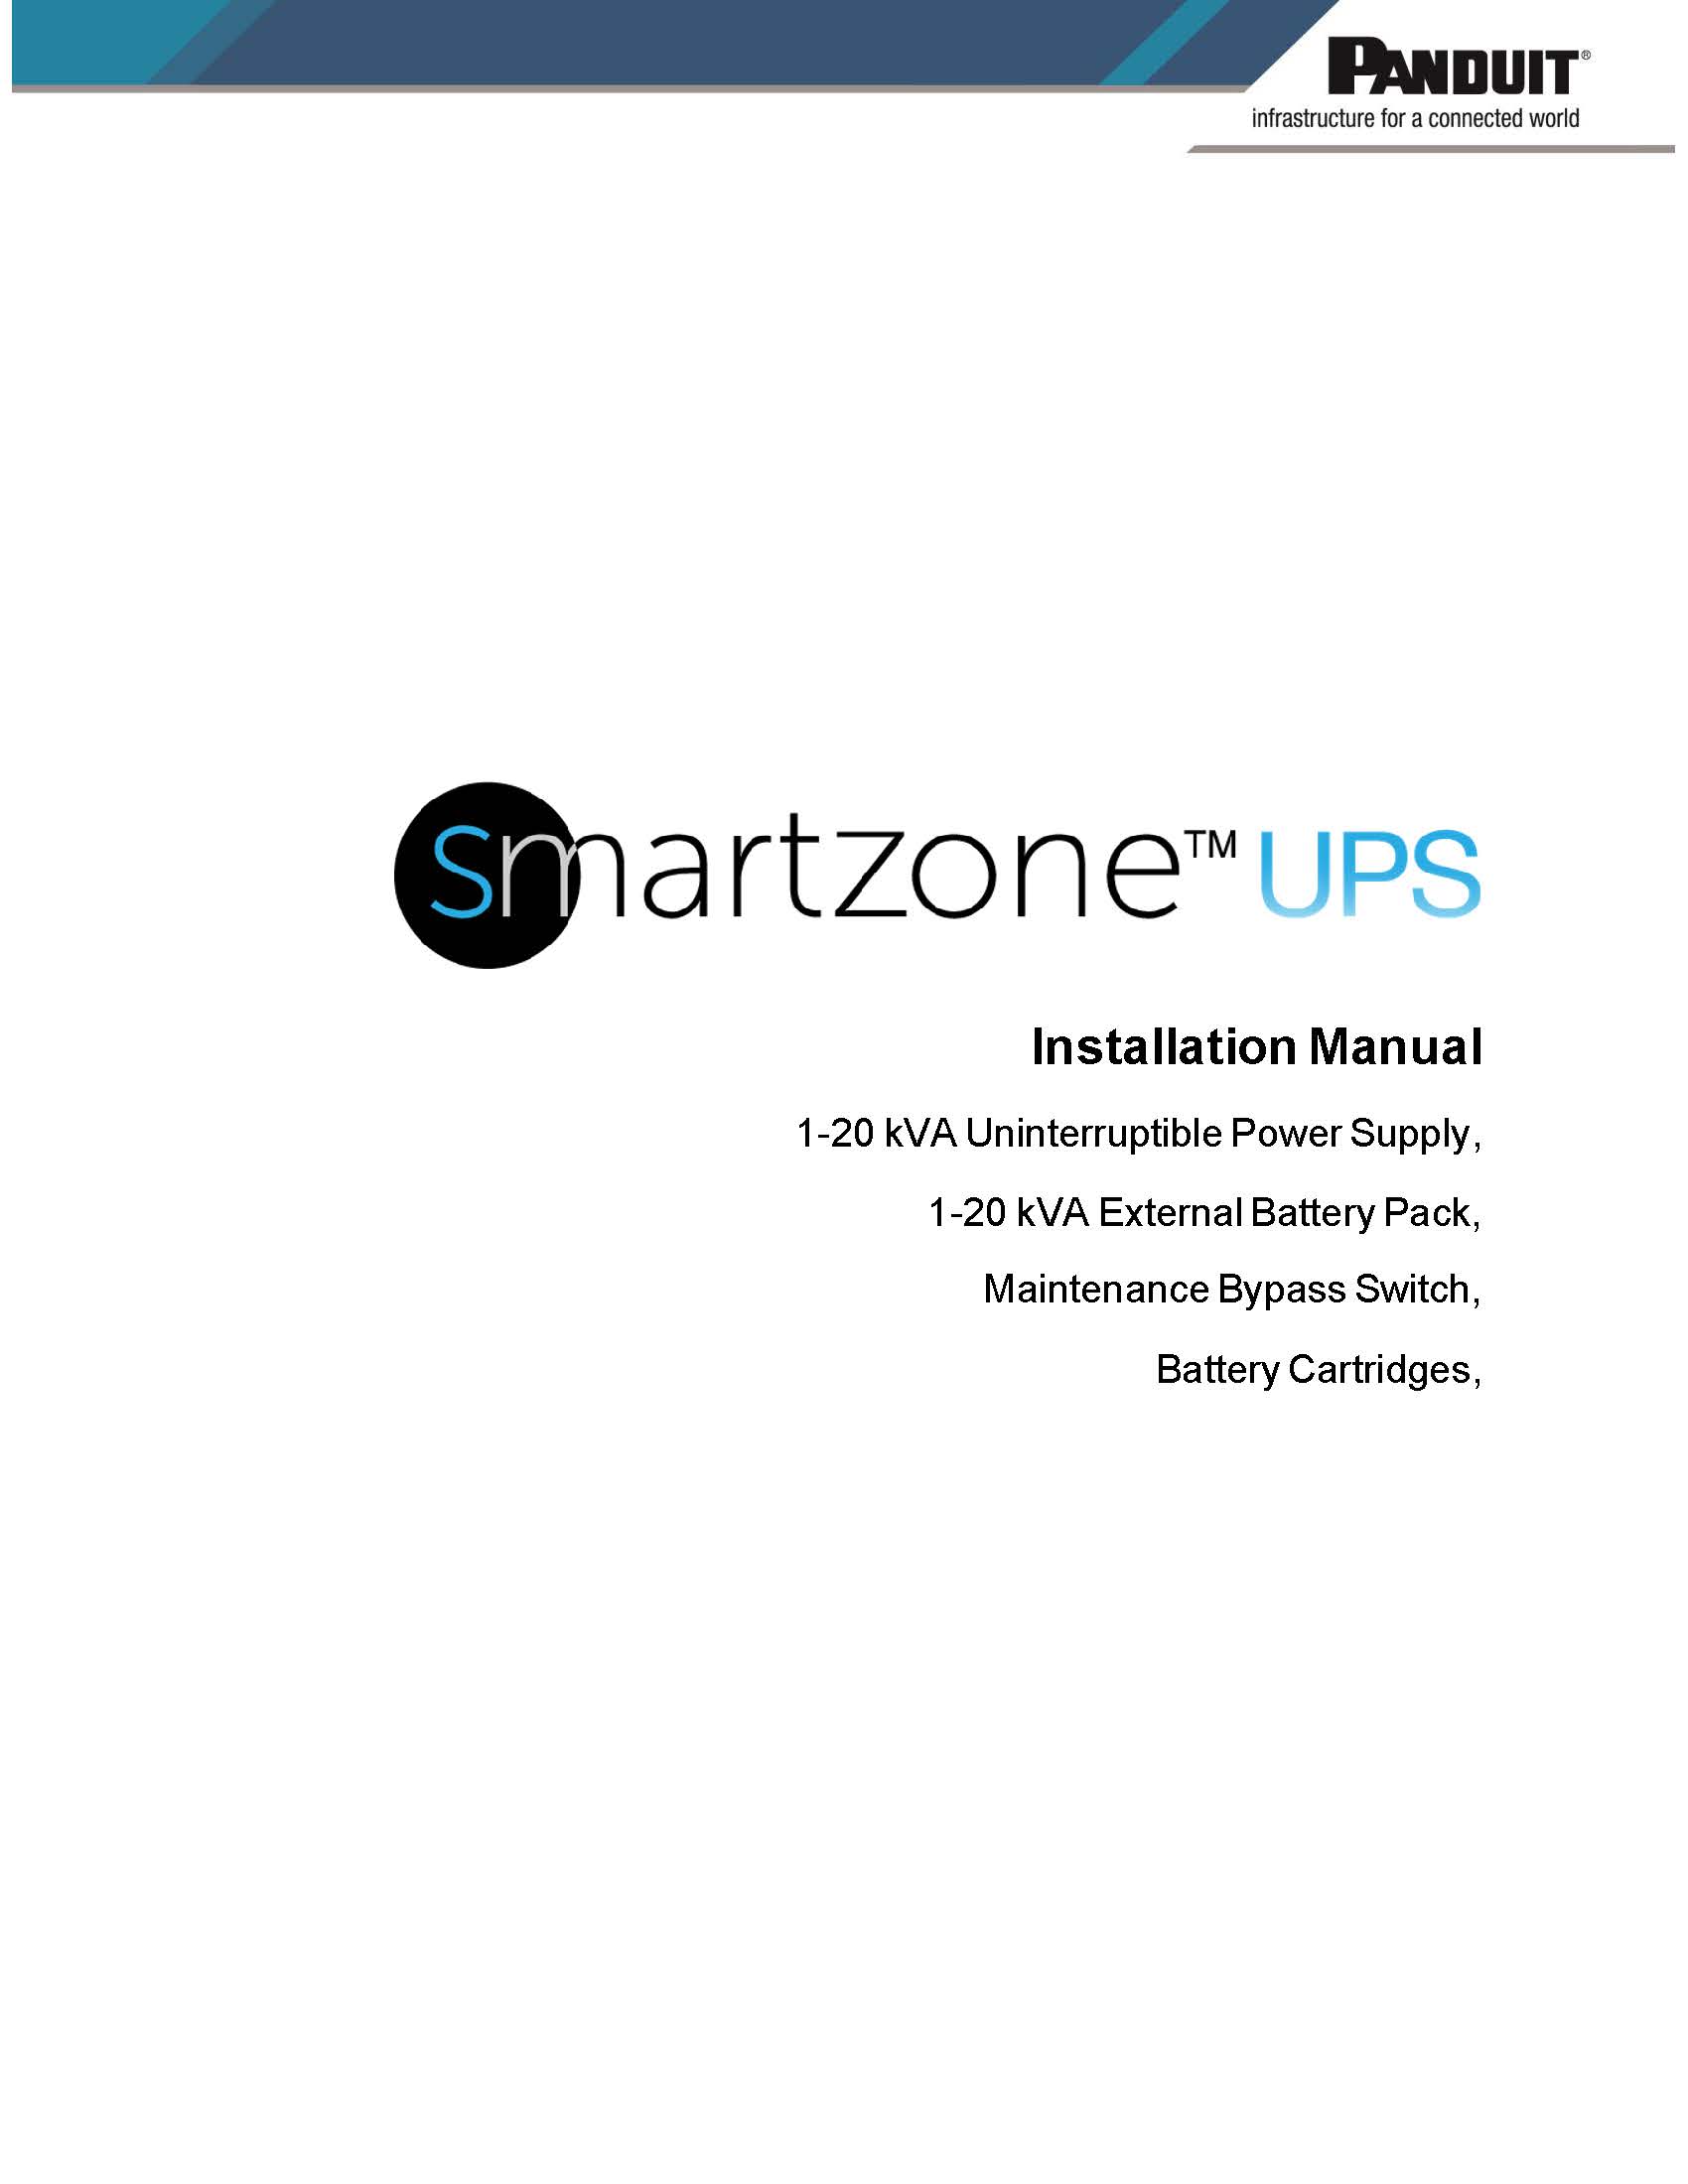 SZ UPS 1-20 kVA Installation Manual - 1.jpg